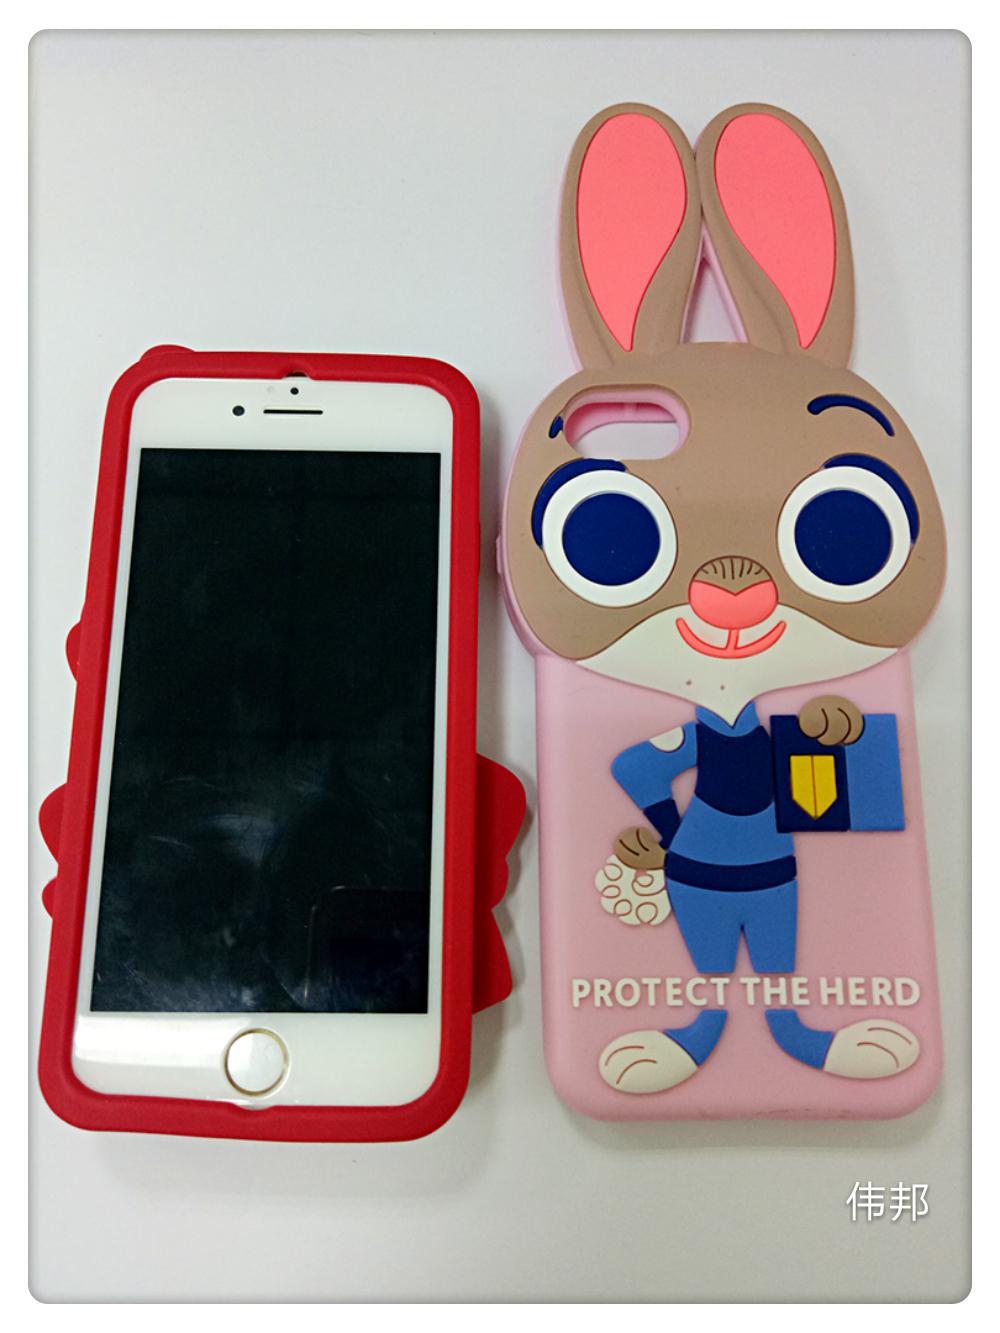 东莞爆款新款iphone7手机套苹果iphone6/5S手机壳生产厂家